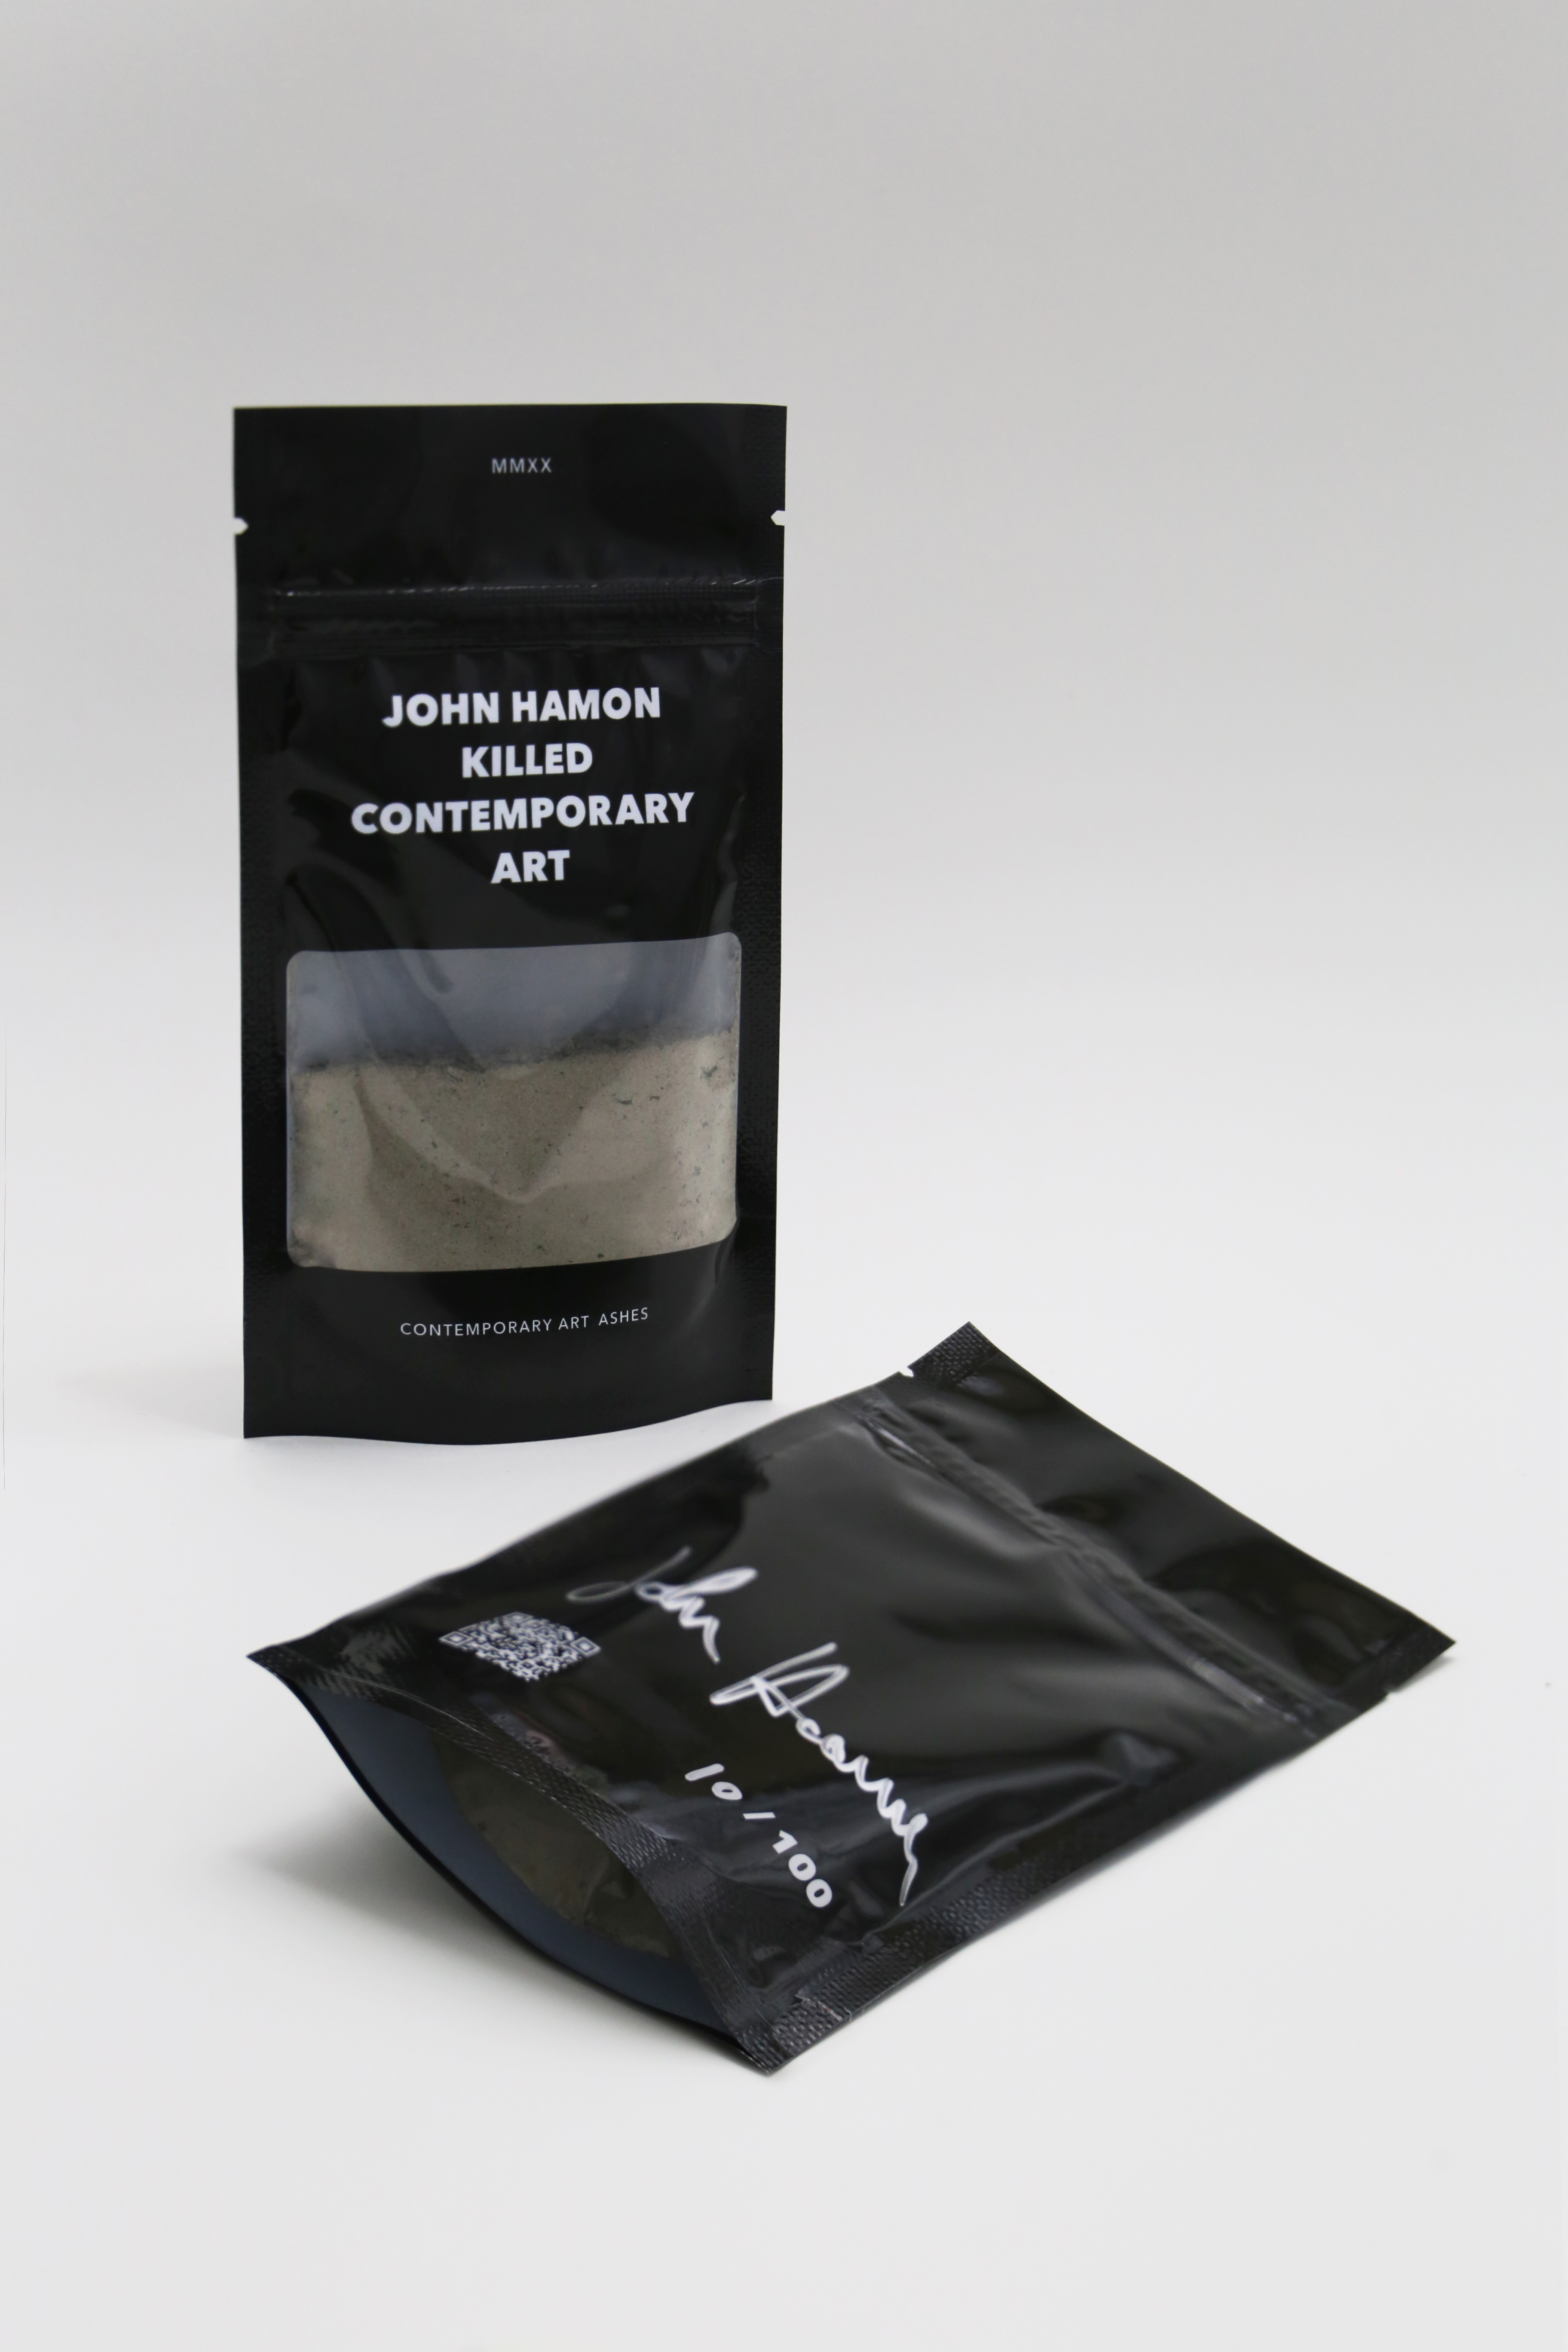 John Hamon killed Contemporary Art